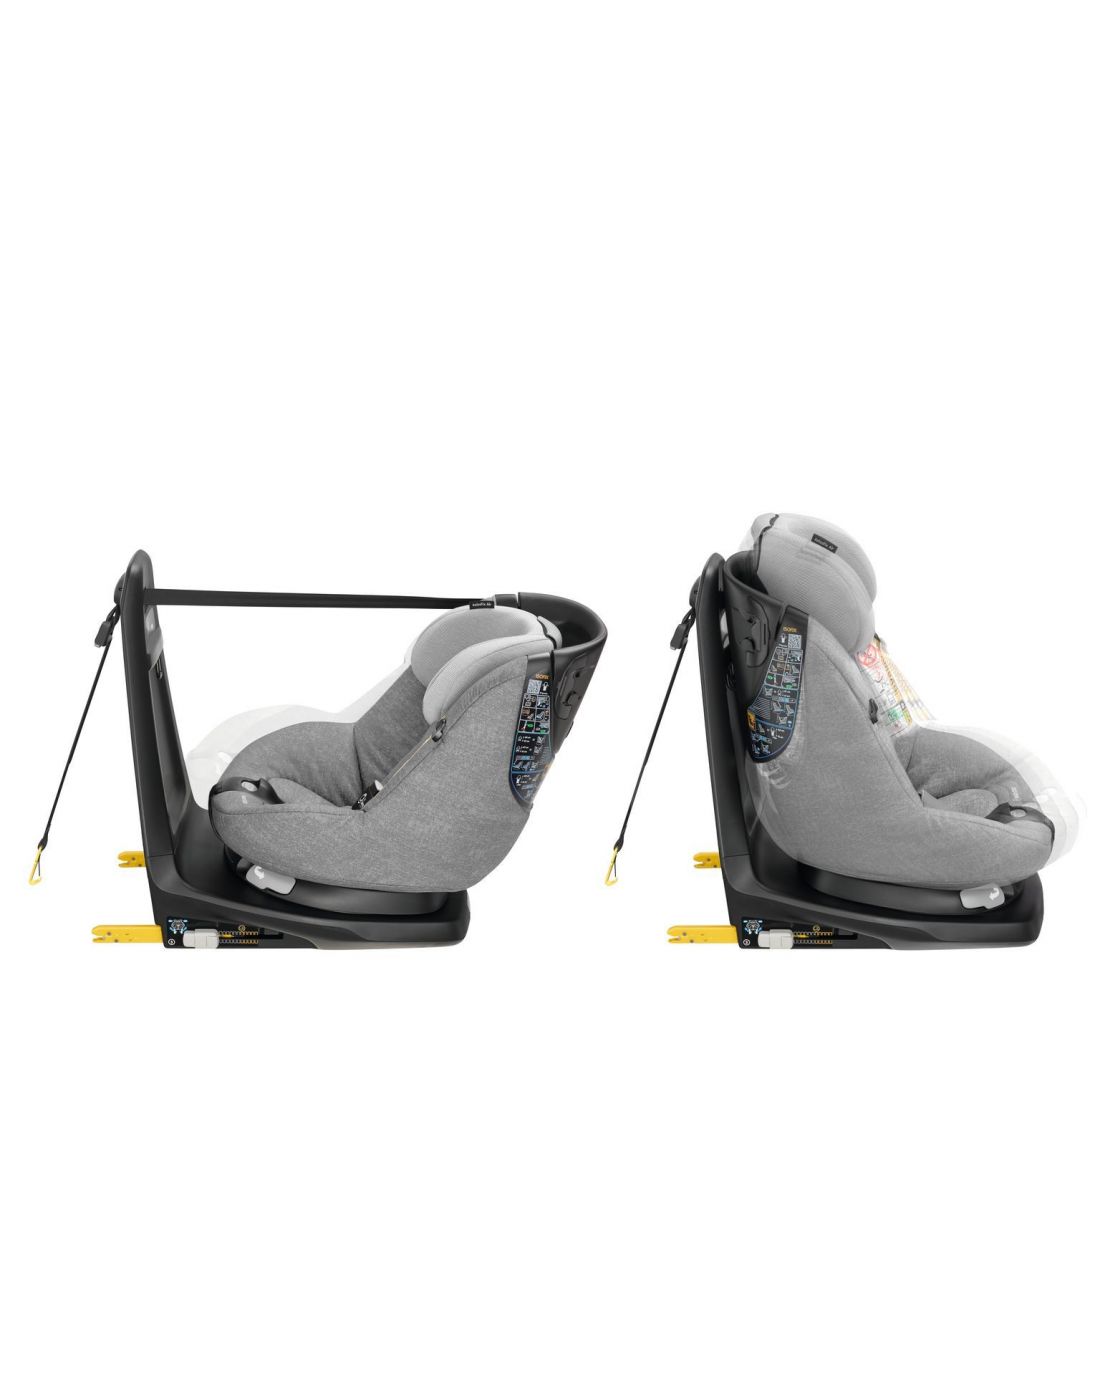 Παιδικό Κάθισμα Αυτοκινήτου Maxi Cosi AxissFix Air Nomad Grey